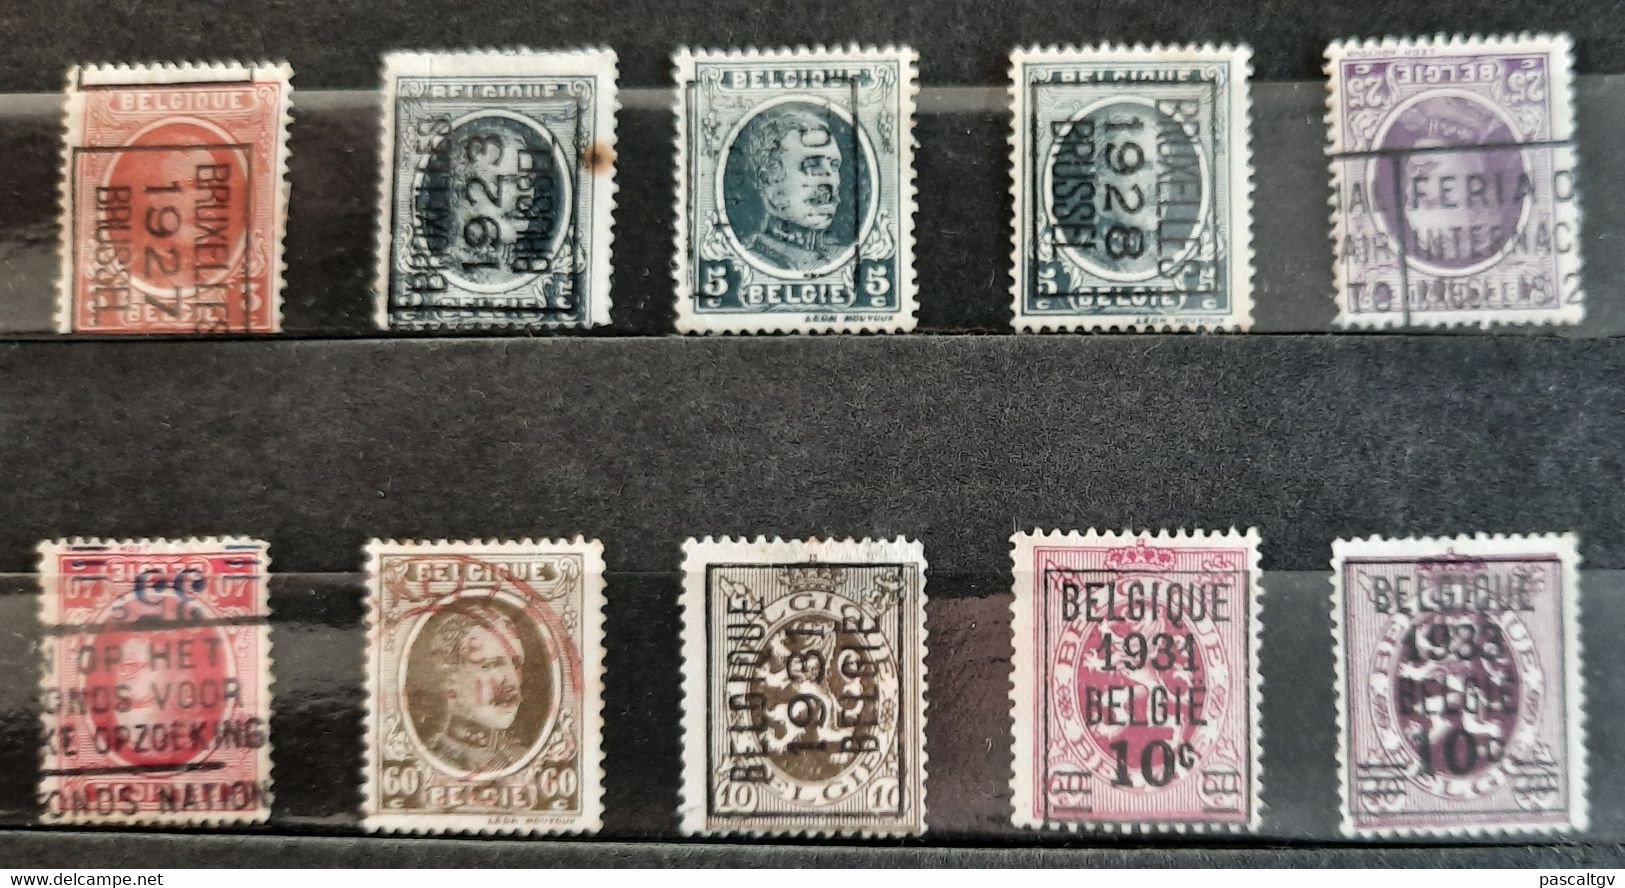 BELGIQUE / BELGIE - LOT de 59 timbres PREOBLITERES - BELGIË / BELGIE - LOT van 59 VOORAF GEANNULEERDE postzegels -